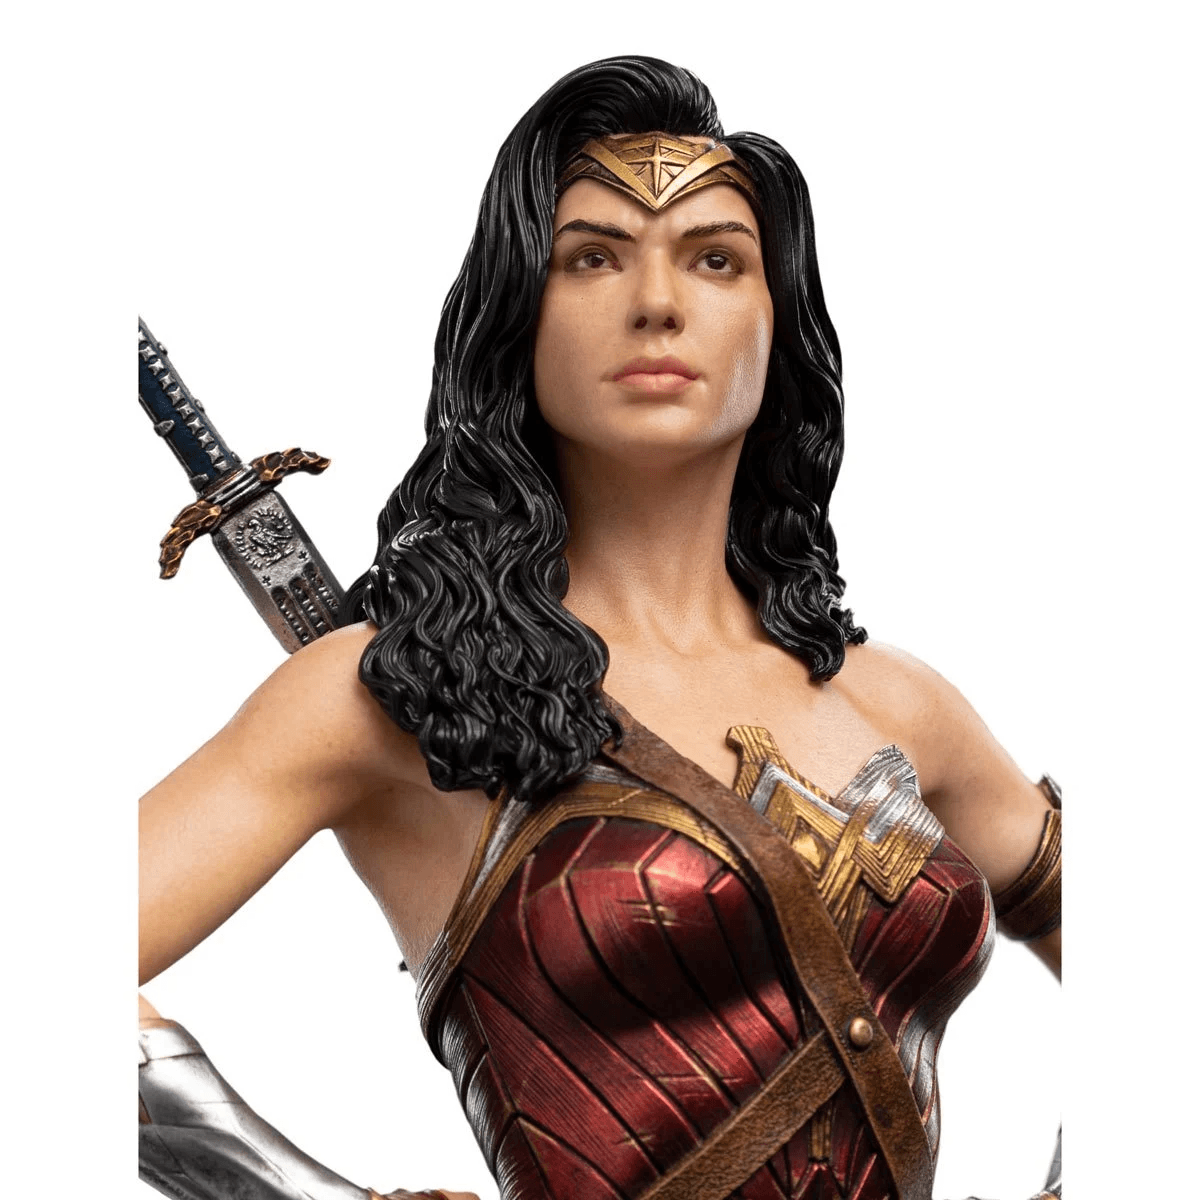 WET04264 Justice League (2017) - Wonder Woman Statue - Weta Workshop - Titan Pop Culture